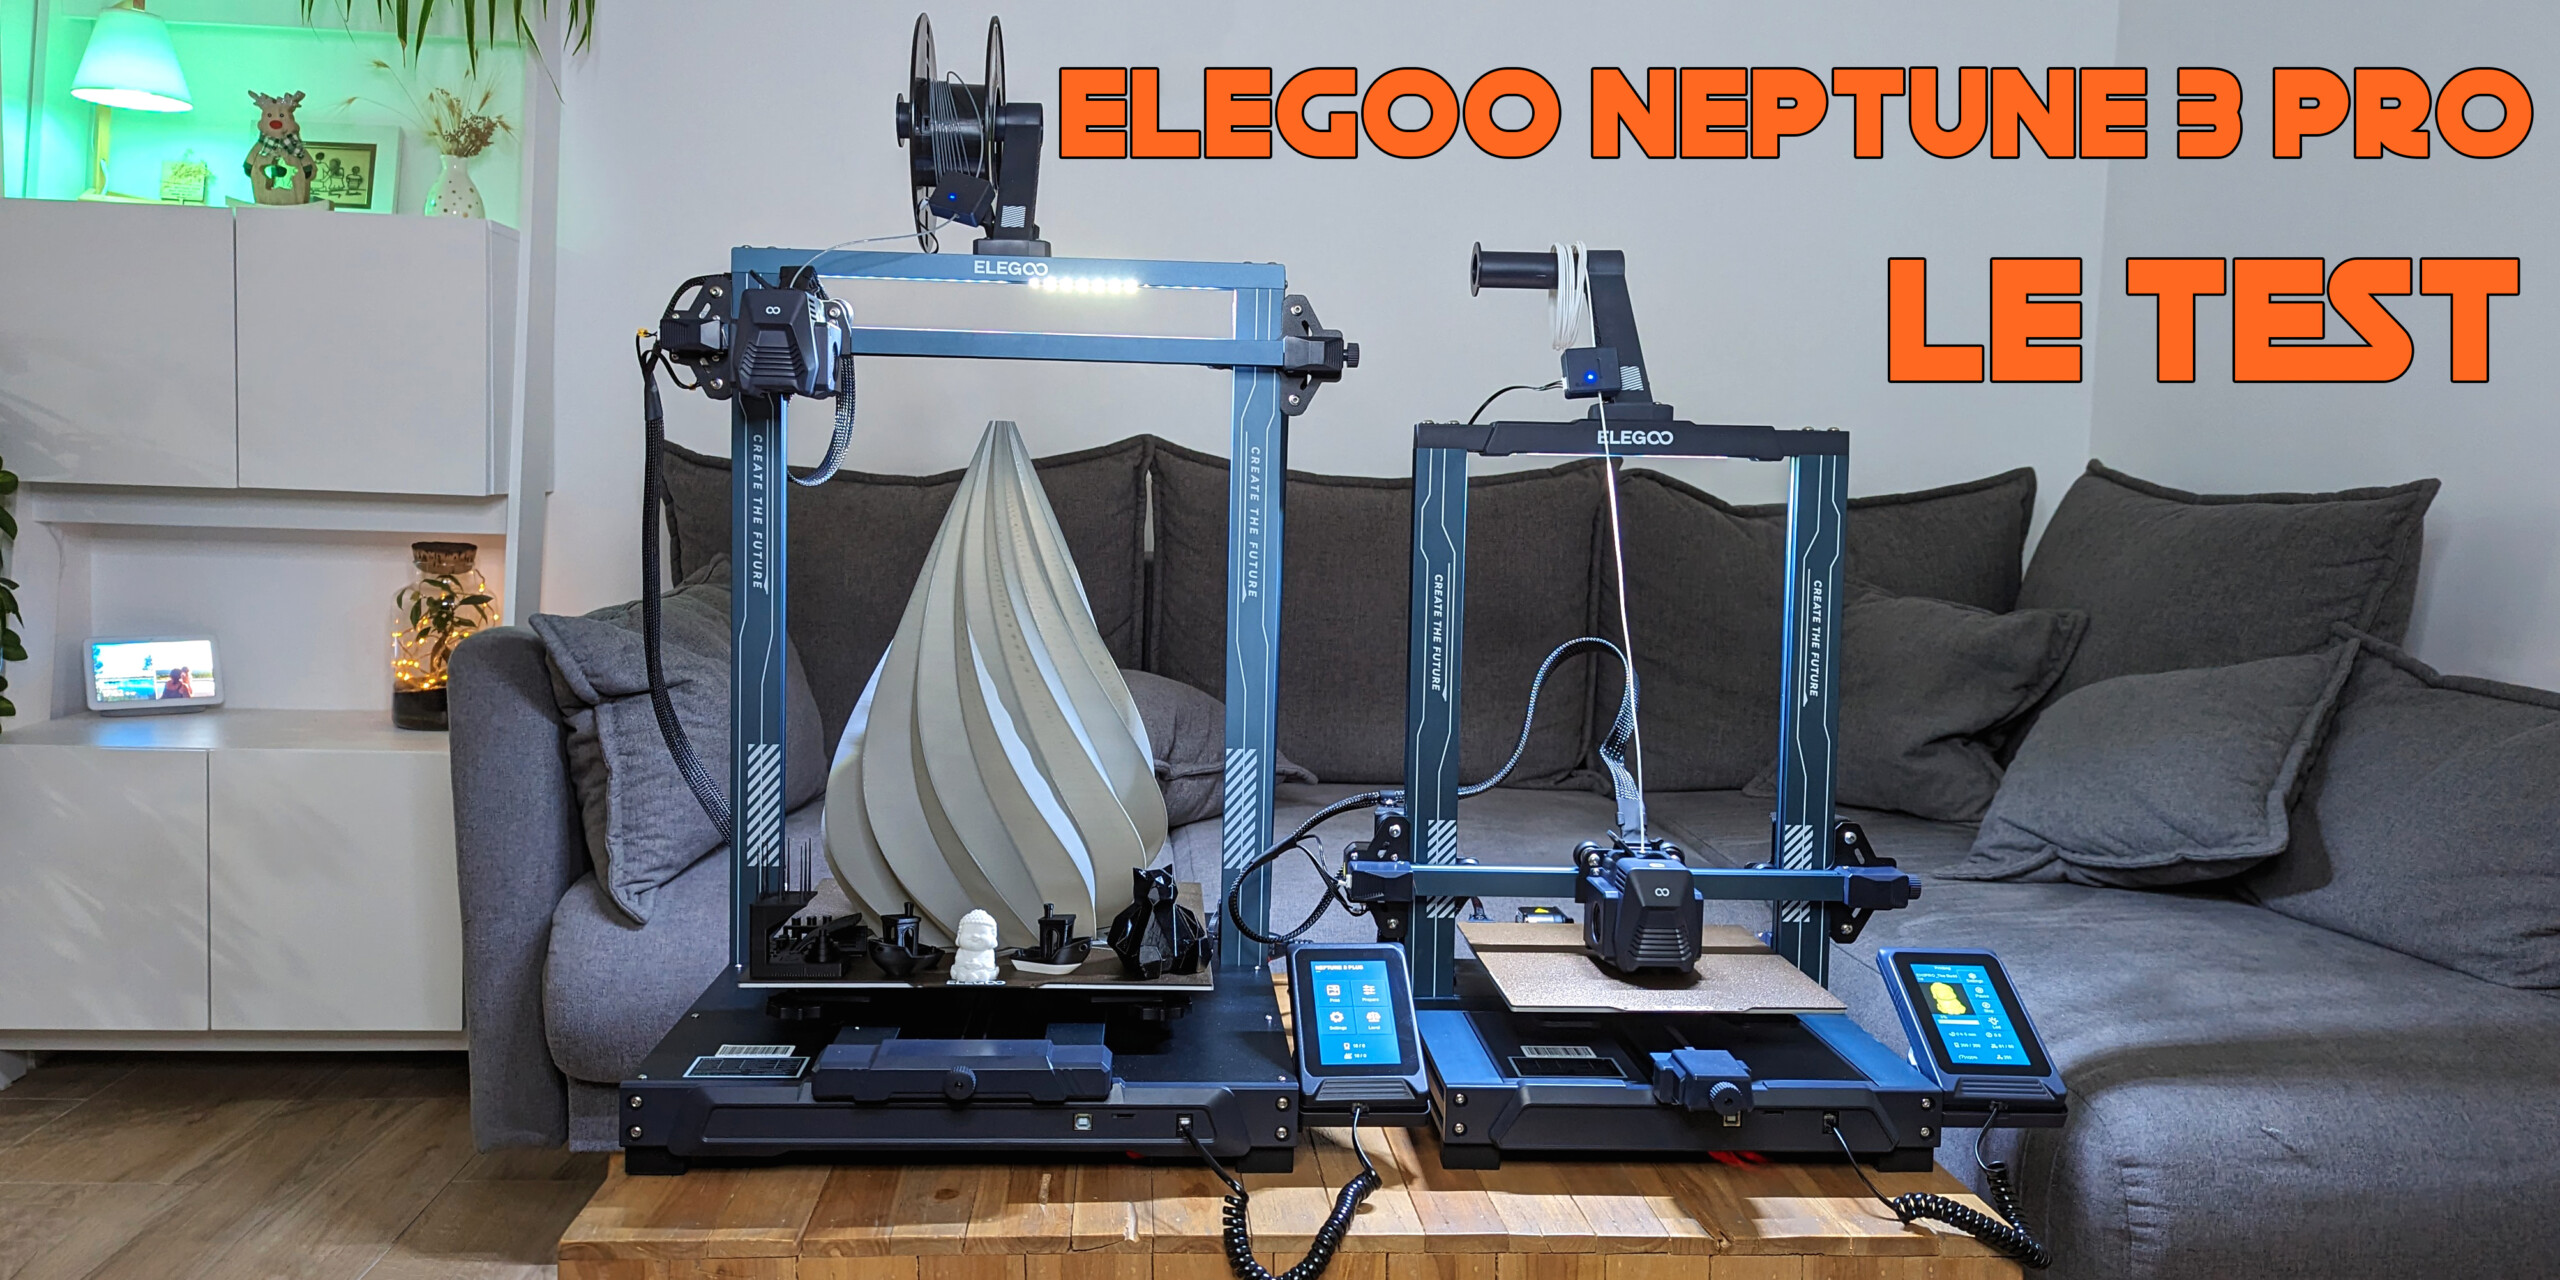 Elegoo Neptune 3 Pro, le test d'une imprimante 3D accessible